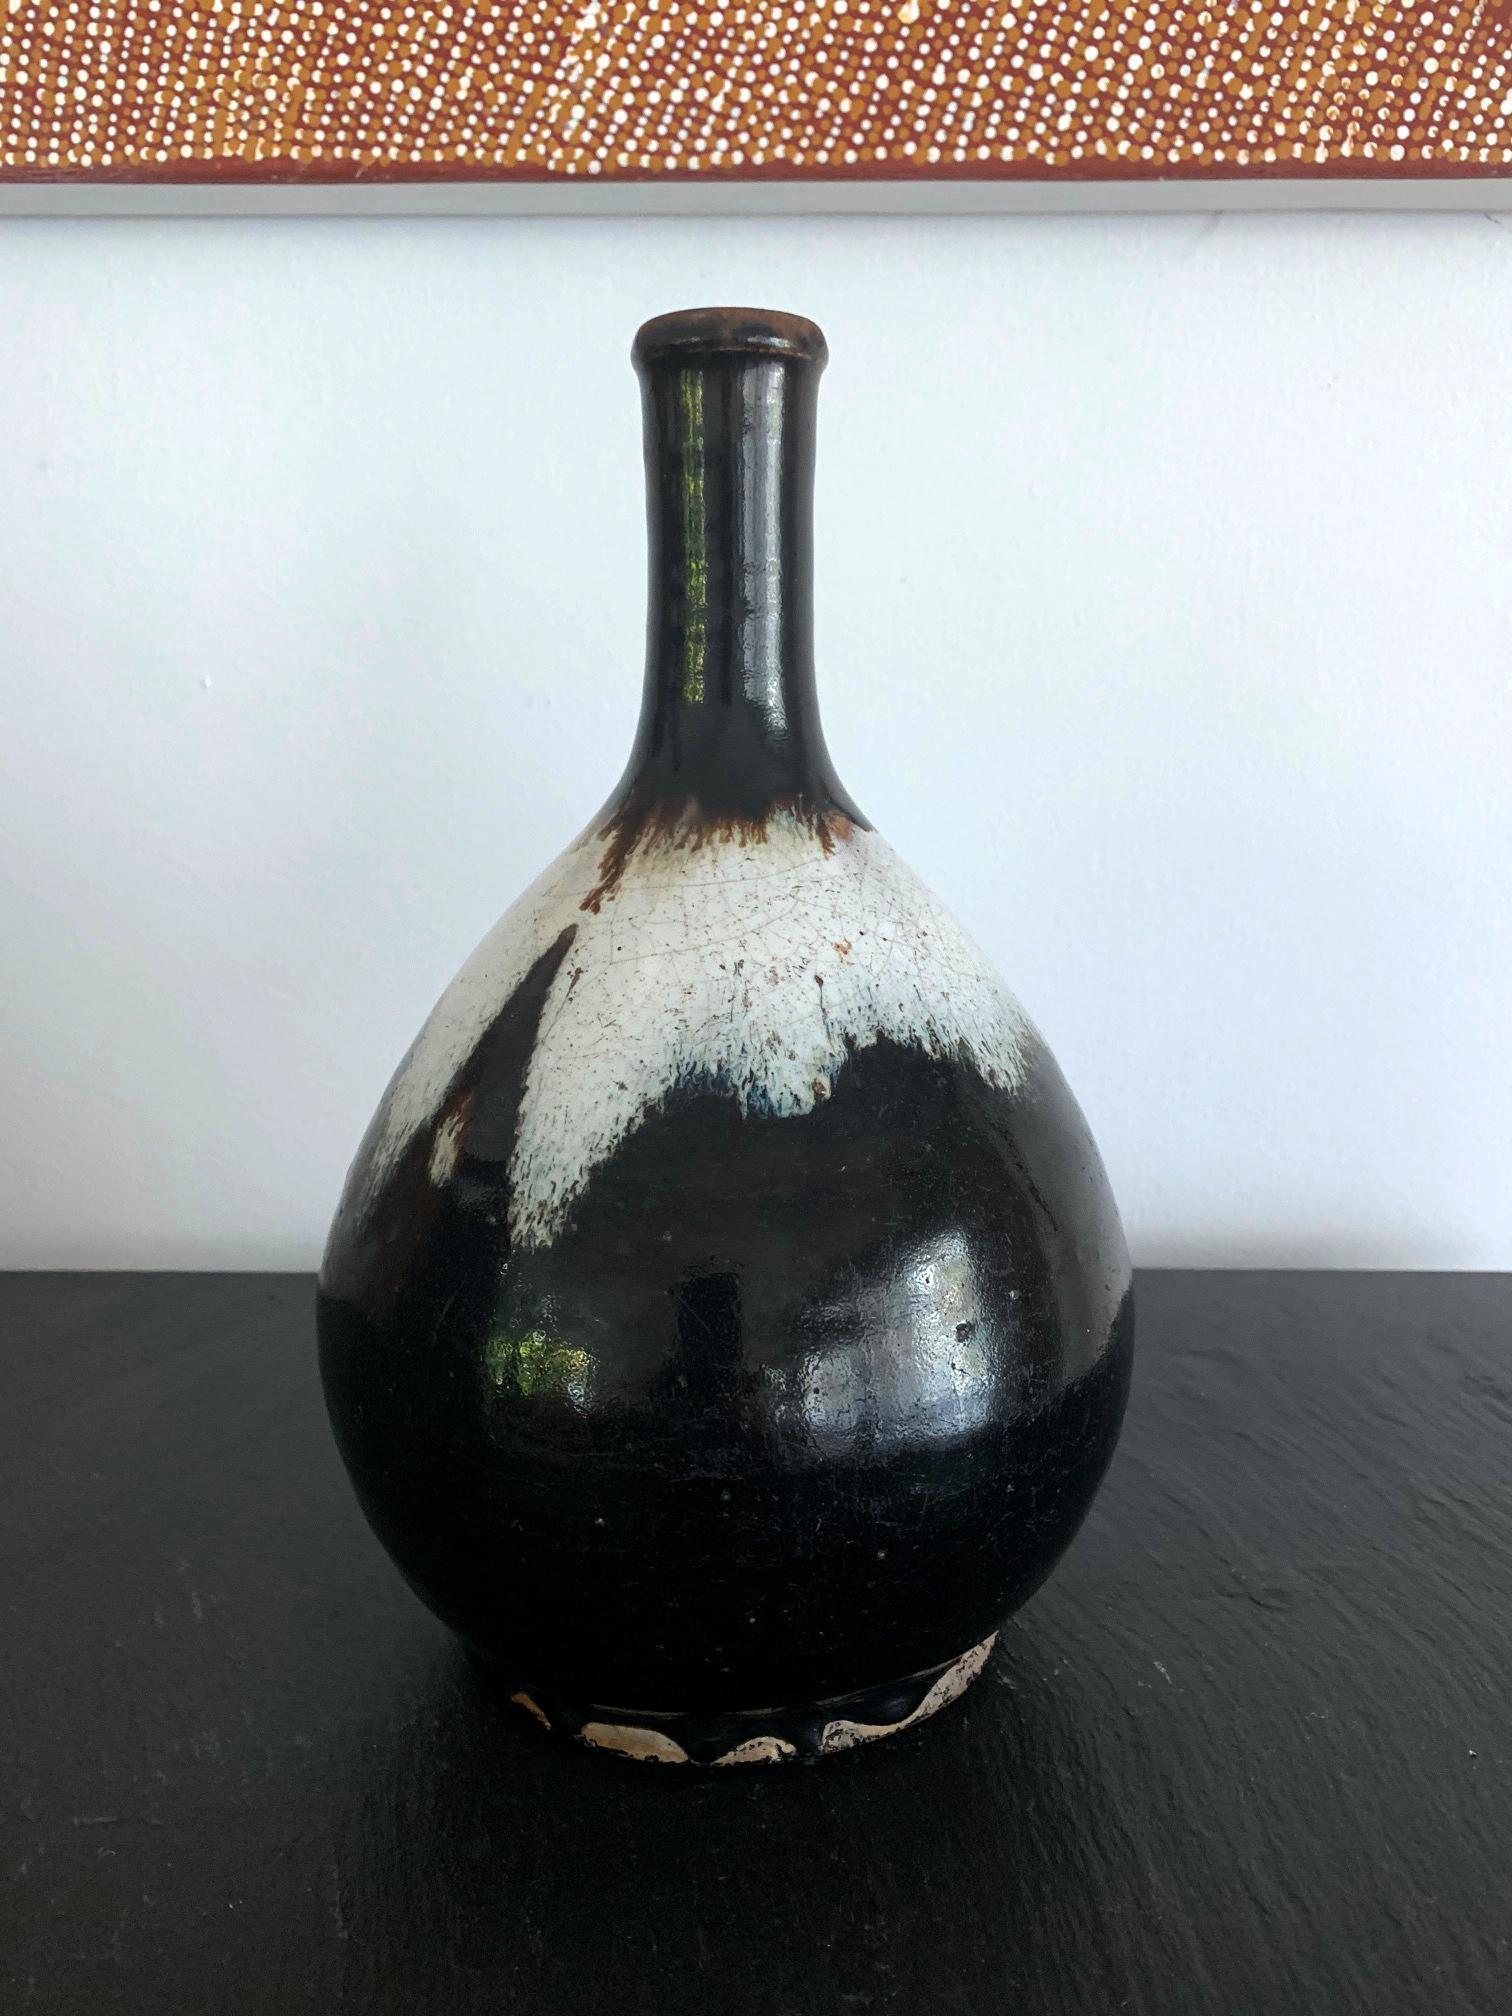 Die Langhalsflasche der klassischen Form wurde mit grobem Ton mit hohem Eisengehalt getöpfert. Die Flasche aus der Edo-Periode des 18. Jahrhunderts diente zur Aufbewahrung von Sake, wurde aber auch als Blumenvase während der Teezeremonie verwendet.